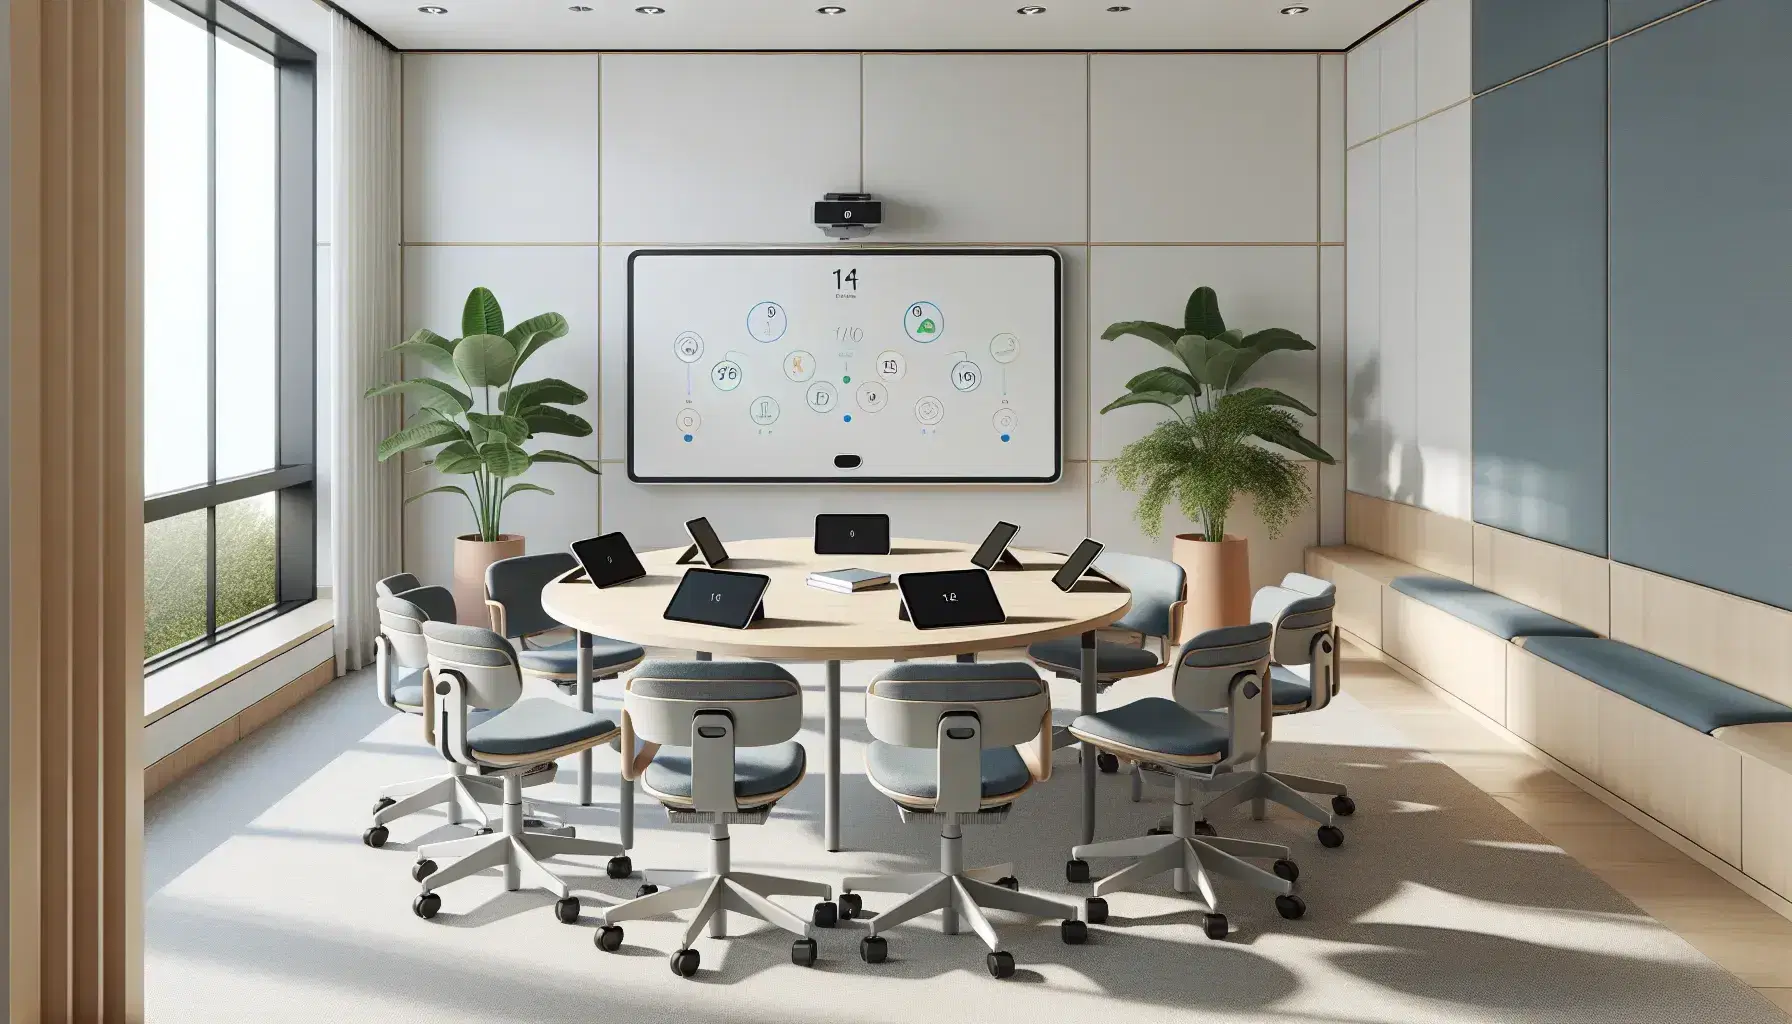 Aula moderna y luminosa con mesa redonda de madera, sillas ergonómicas azules, tabletas digitales y pizarra interactiva blanca.